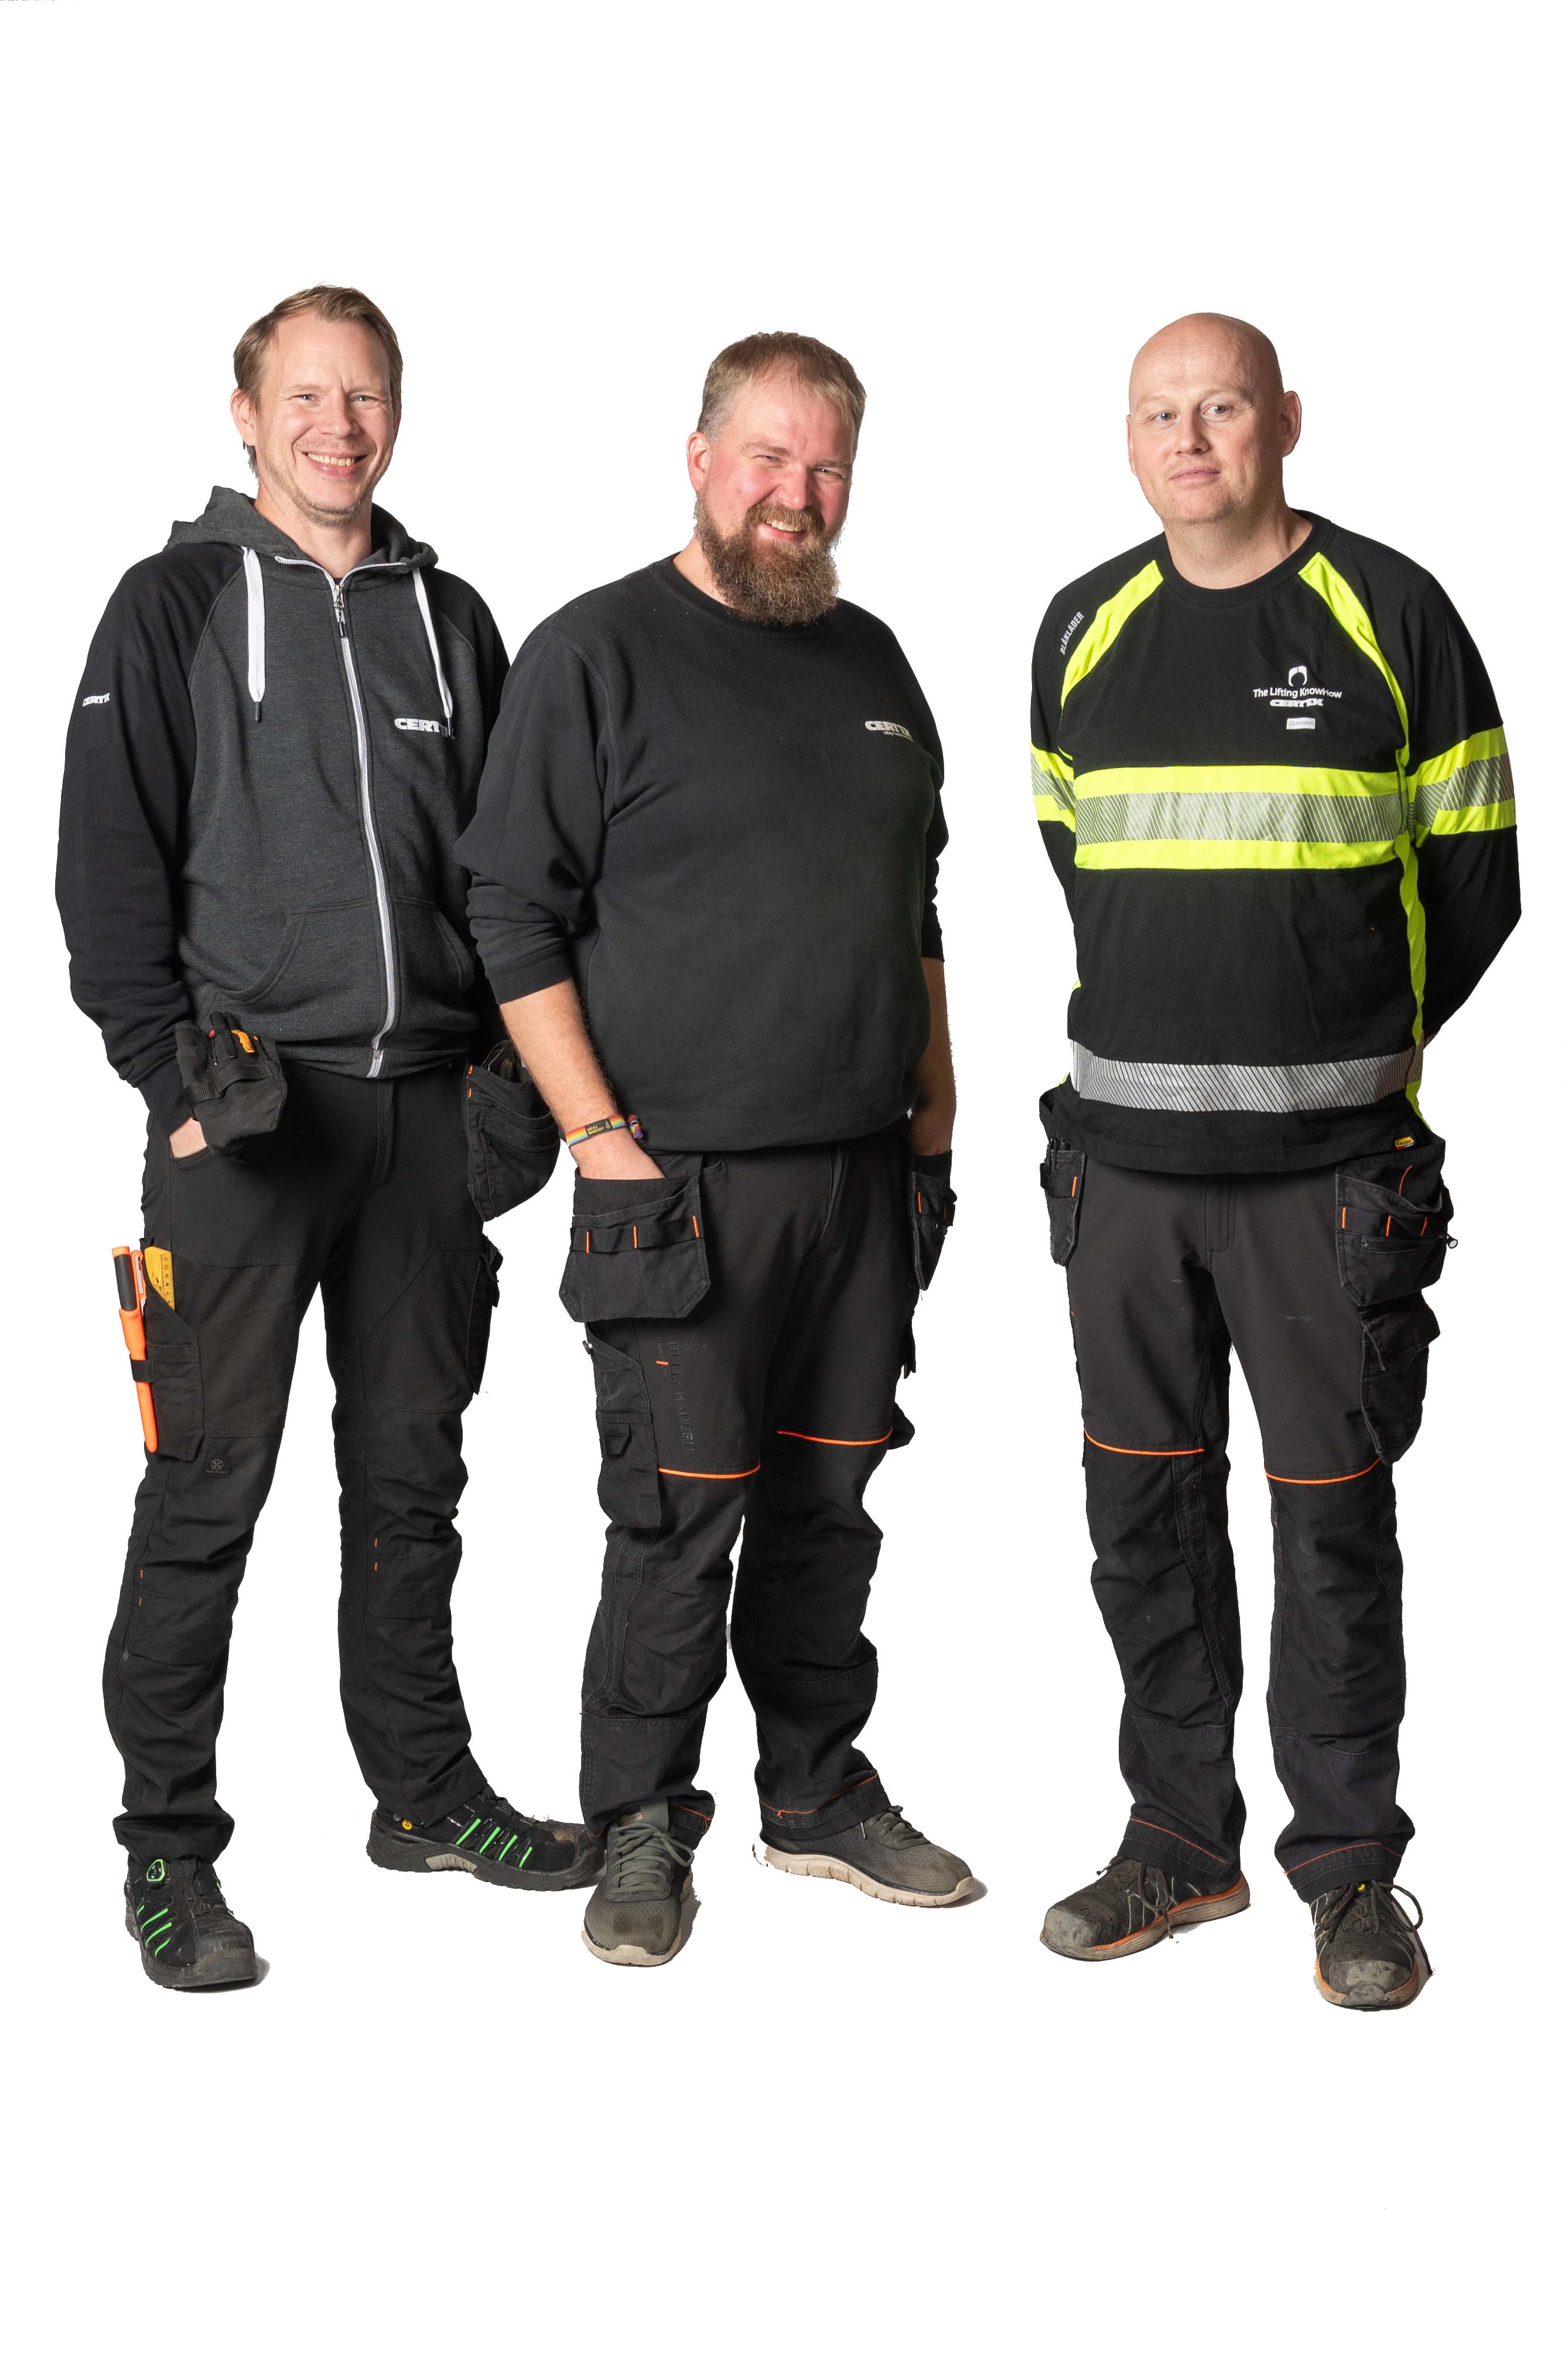 Olav, Kristoffer og Gunnar står klare til å utføre service på ditt utstyr.